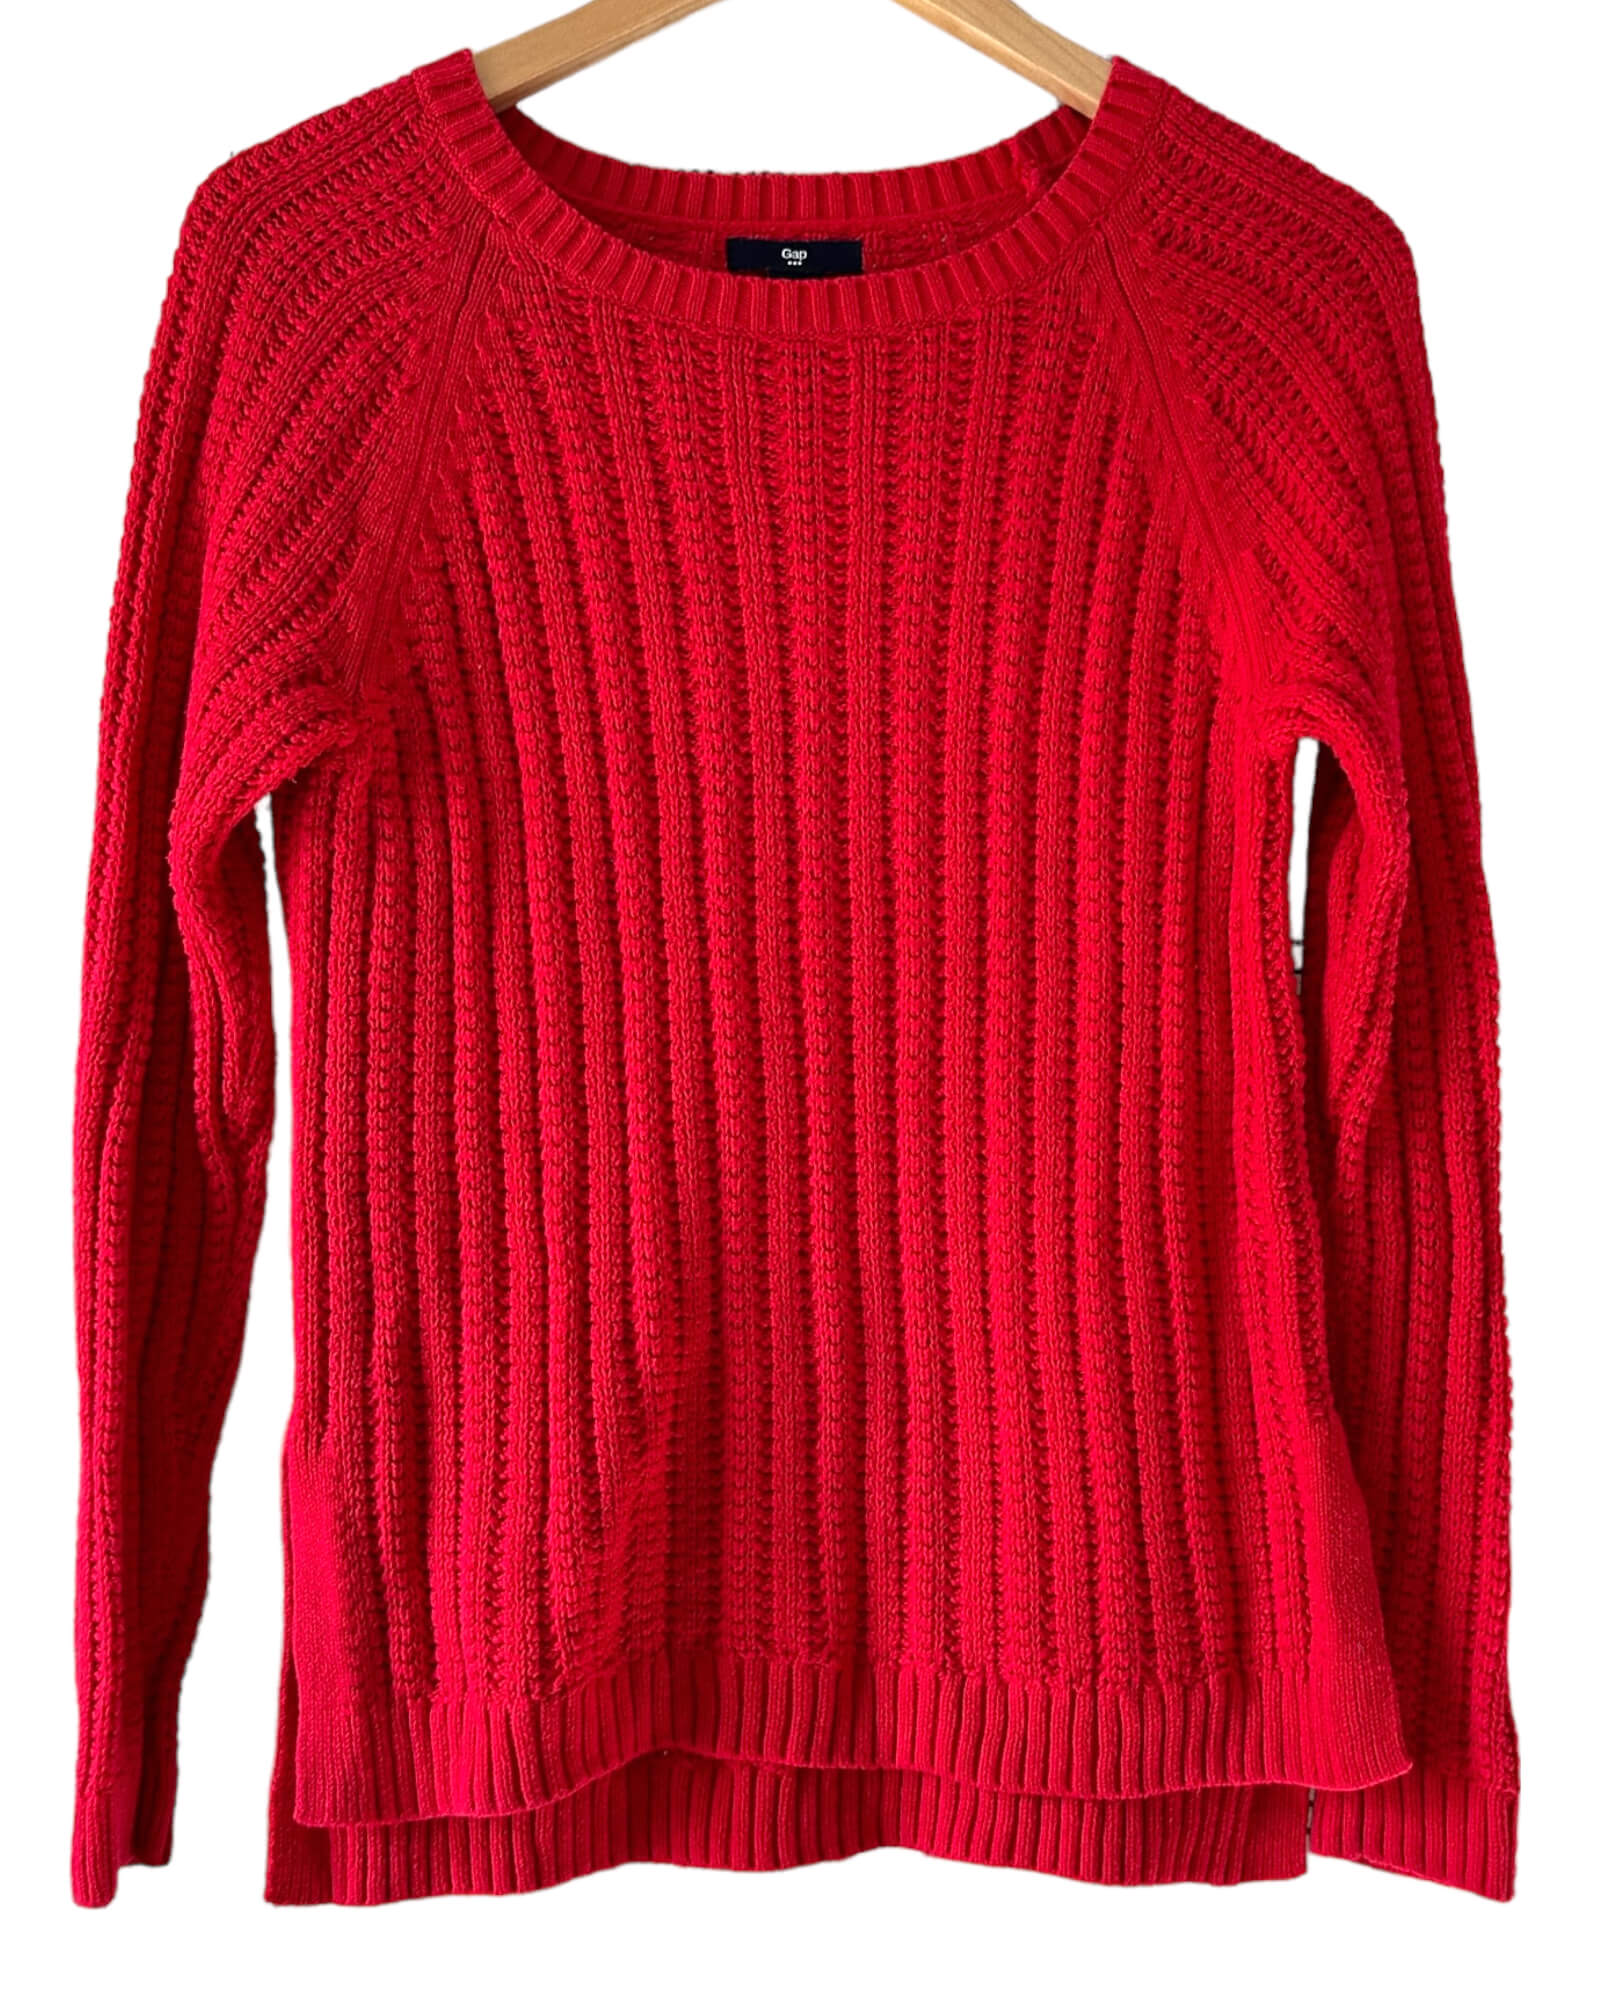 Cool Winter GAP cardinal red ribbed crewneck sweater